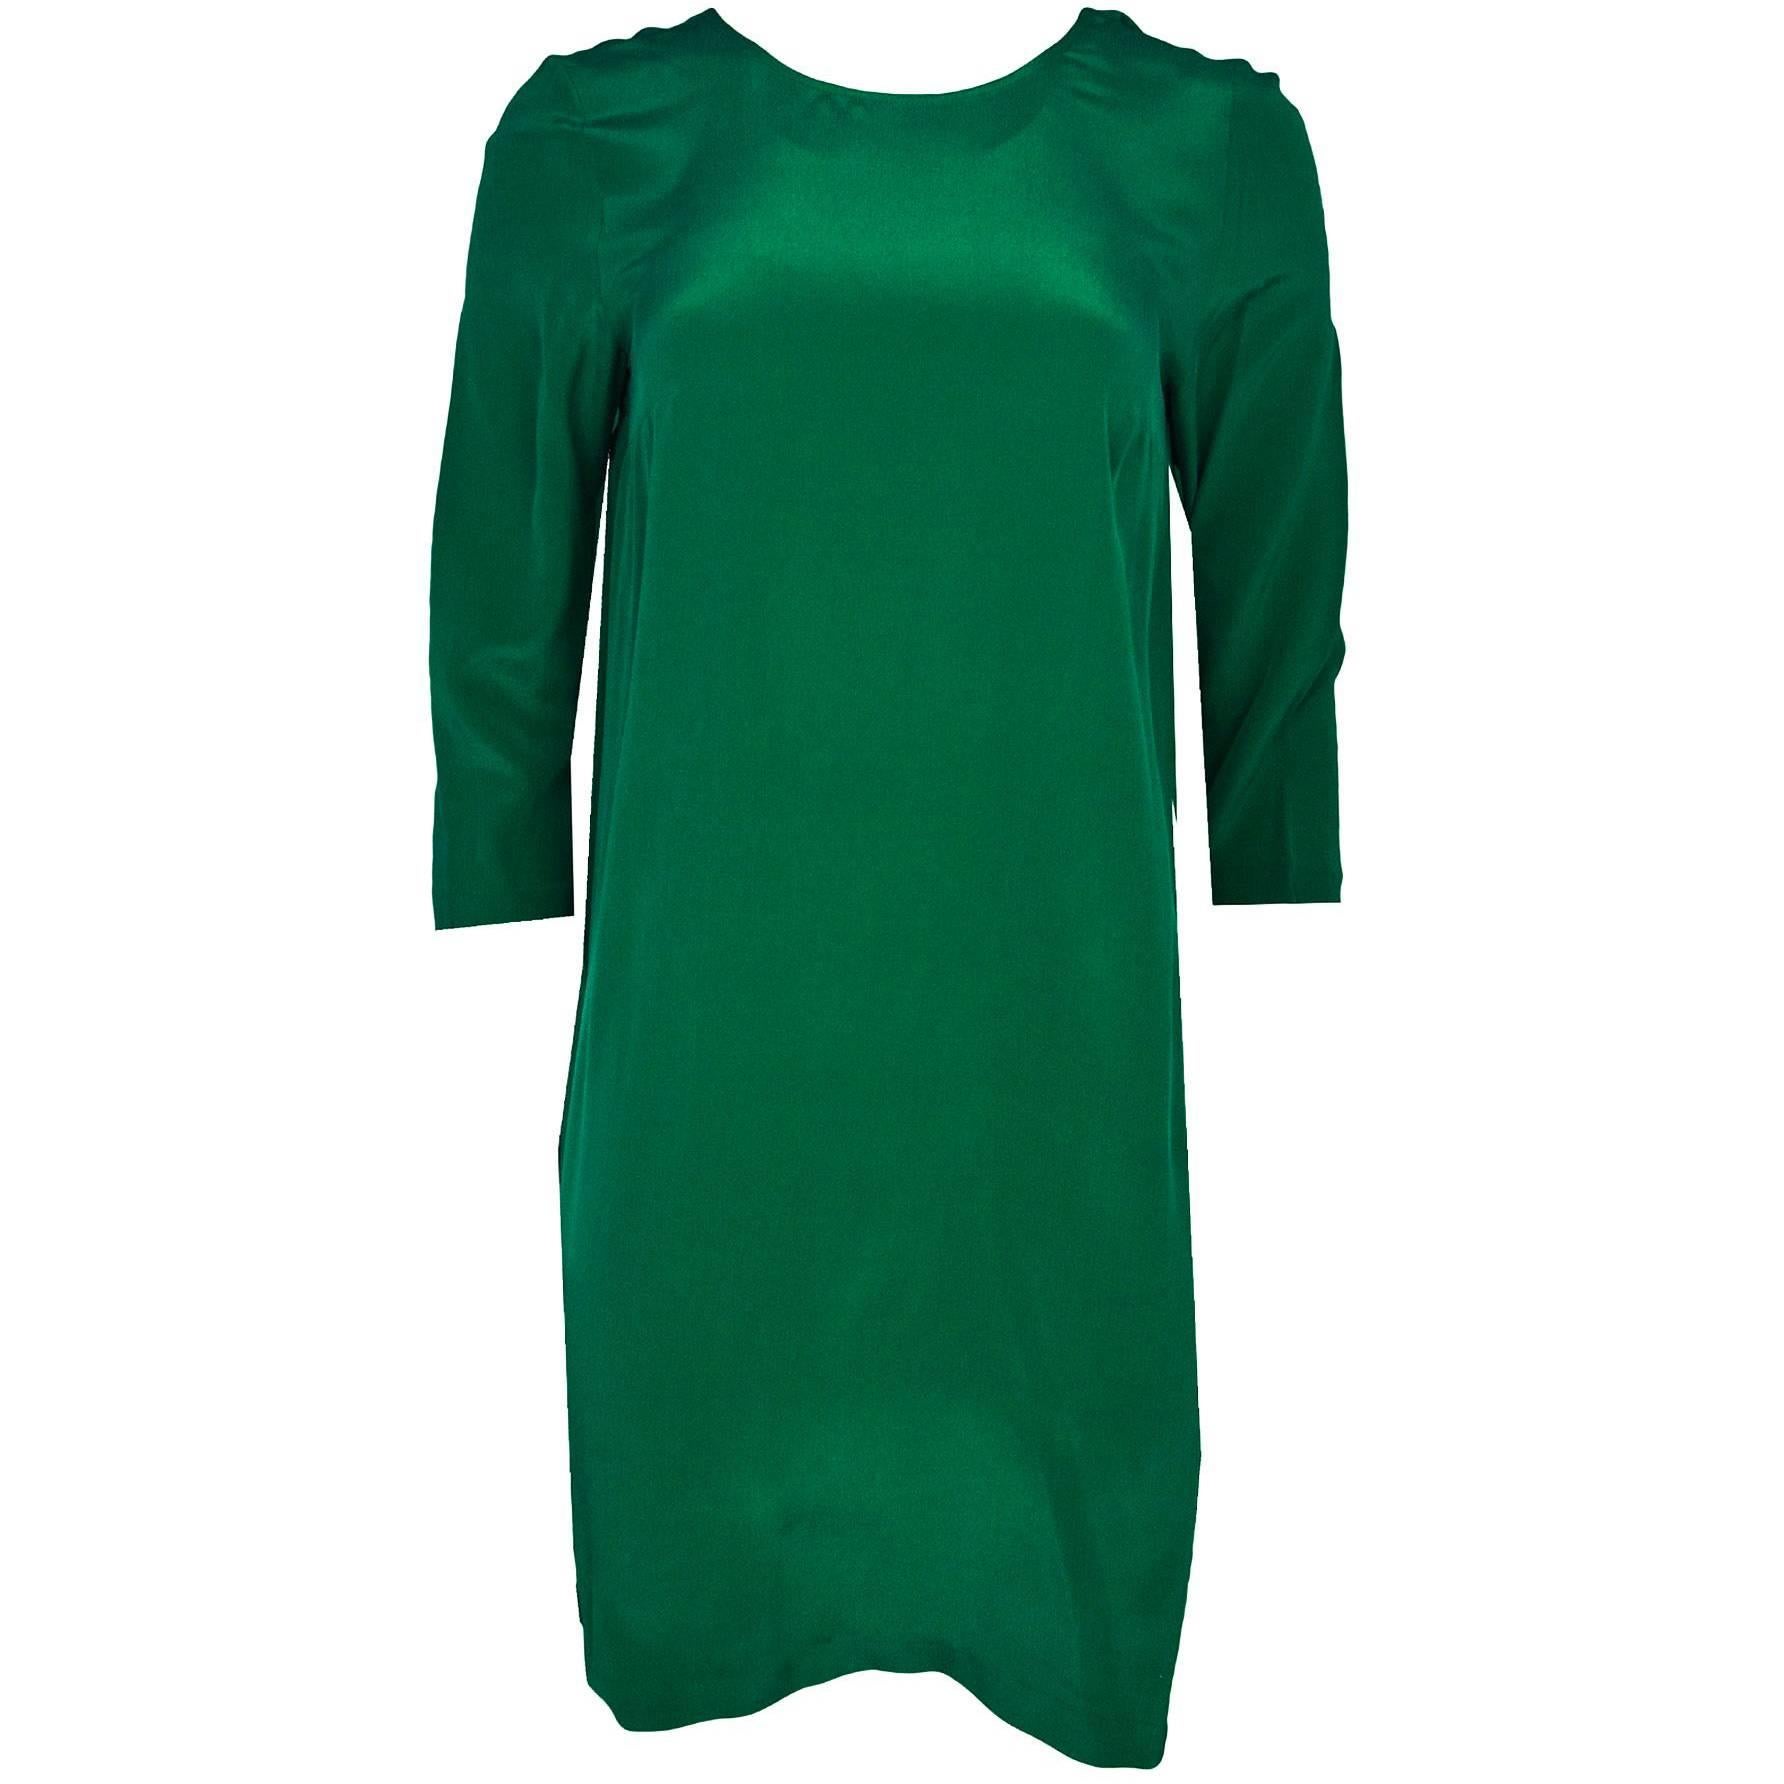 Nieves Lavi Green Silk Dress Sz 6